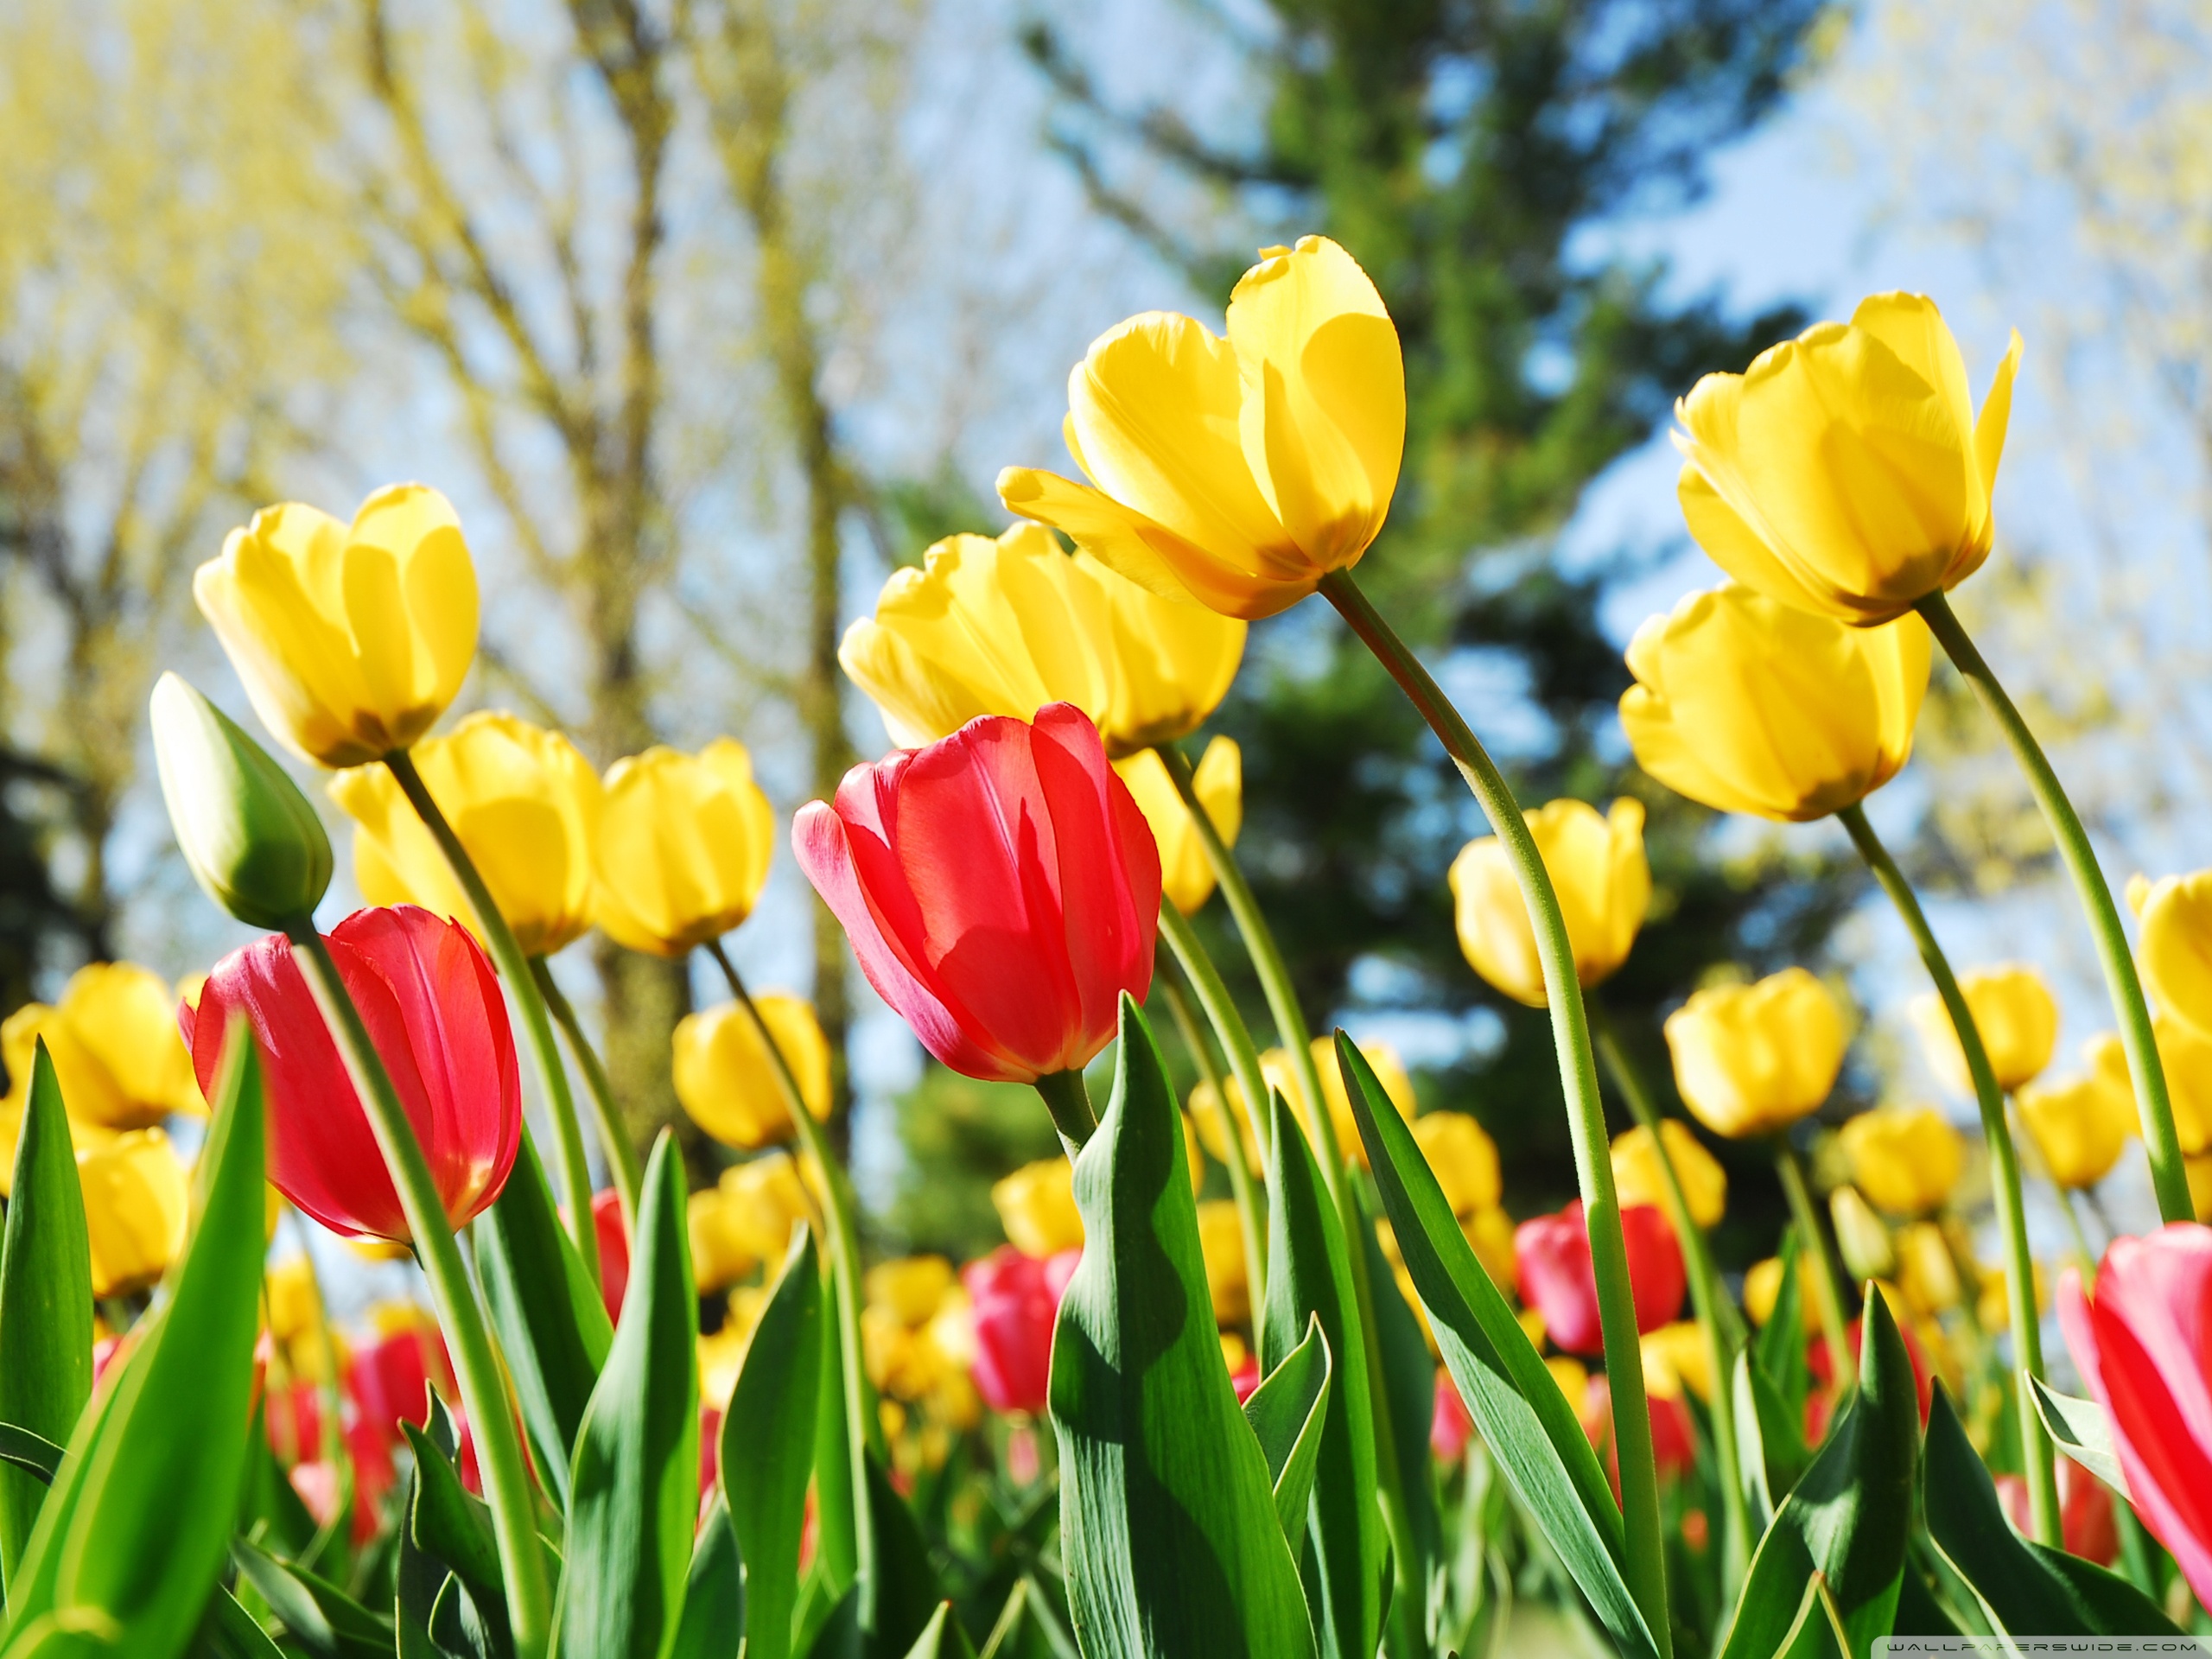 Фото весны красивые на заставку на телефон. Тюльпан Йосемит. Яркие весенние цветы. Весенние цветы тюльпаны.